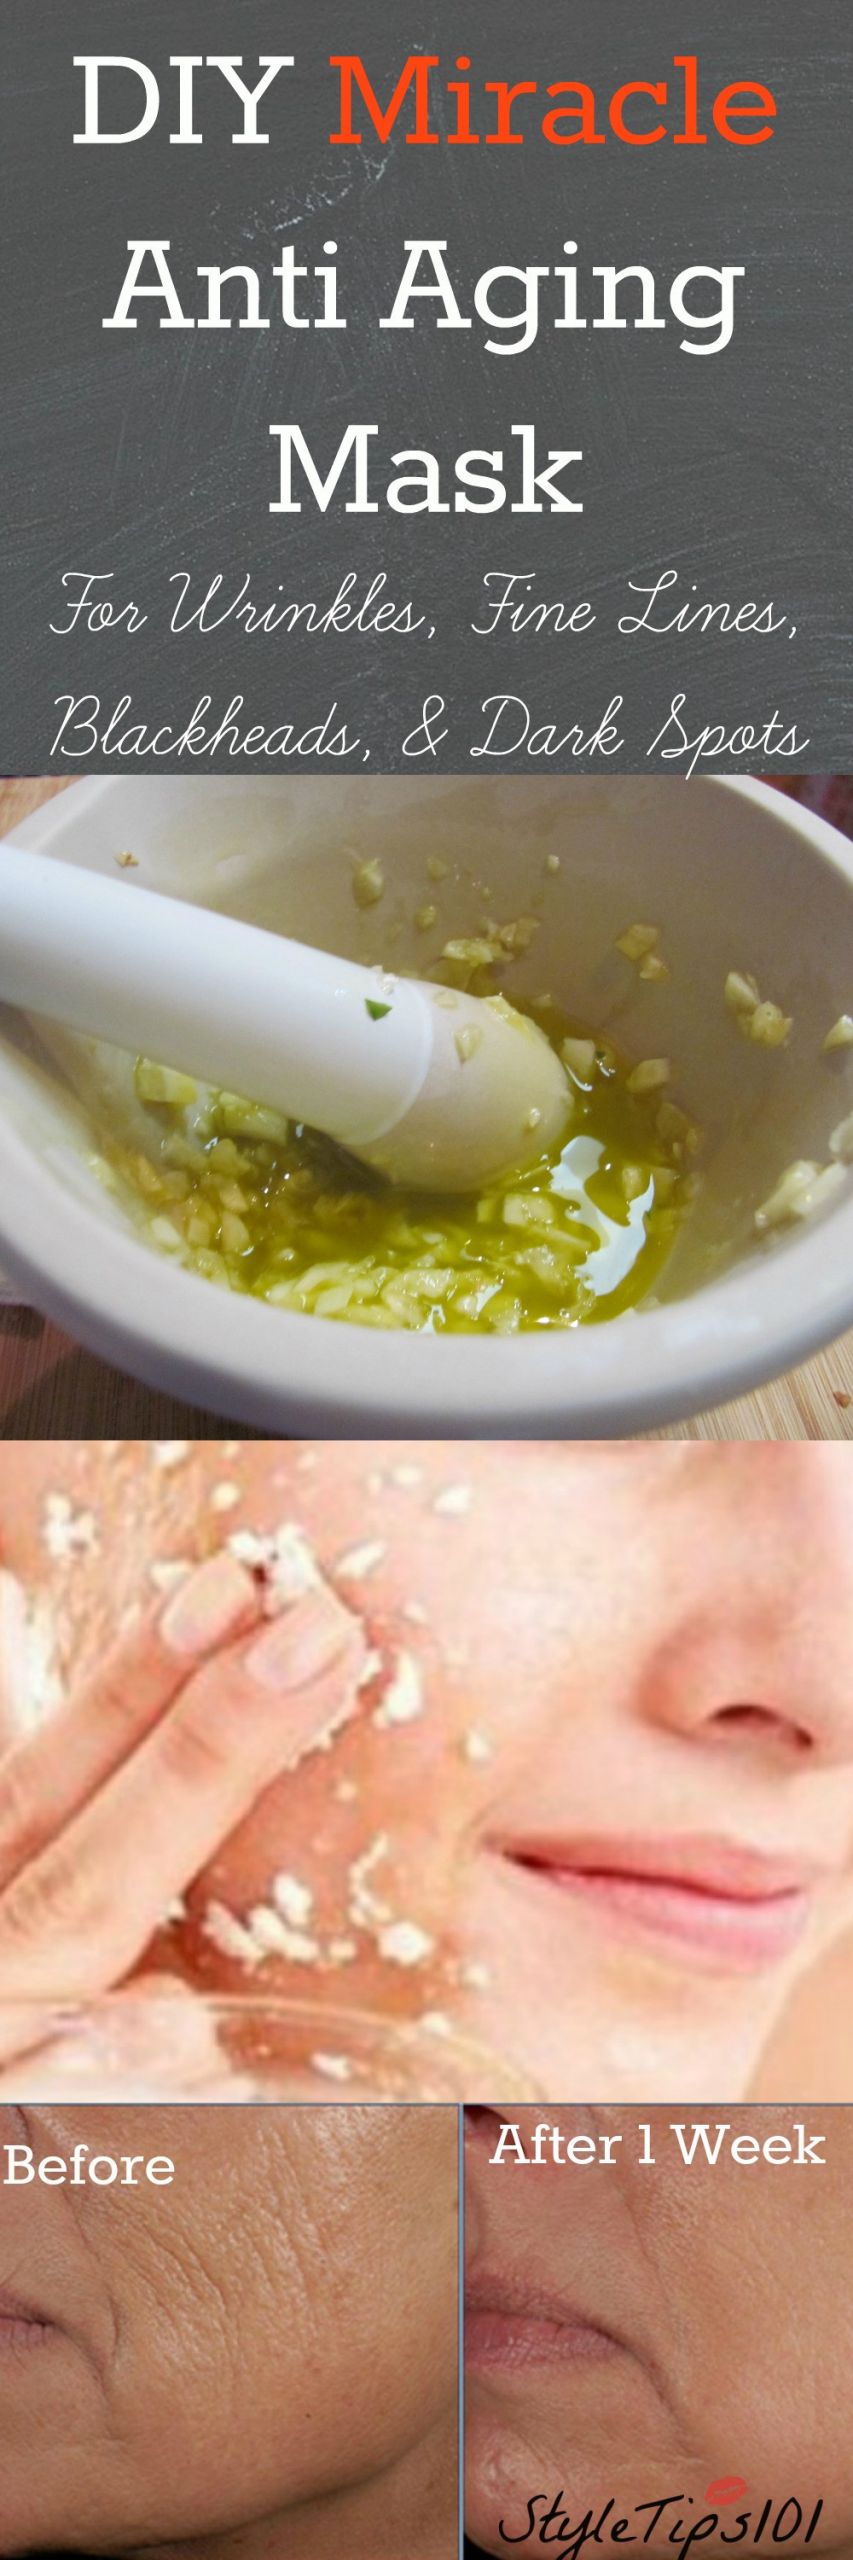 DIY Anti Aging Mask
 DIY Anti Aging Mask With Garlic & Lemon